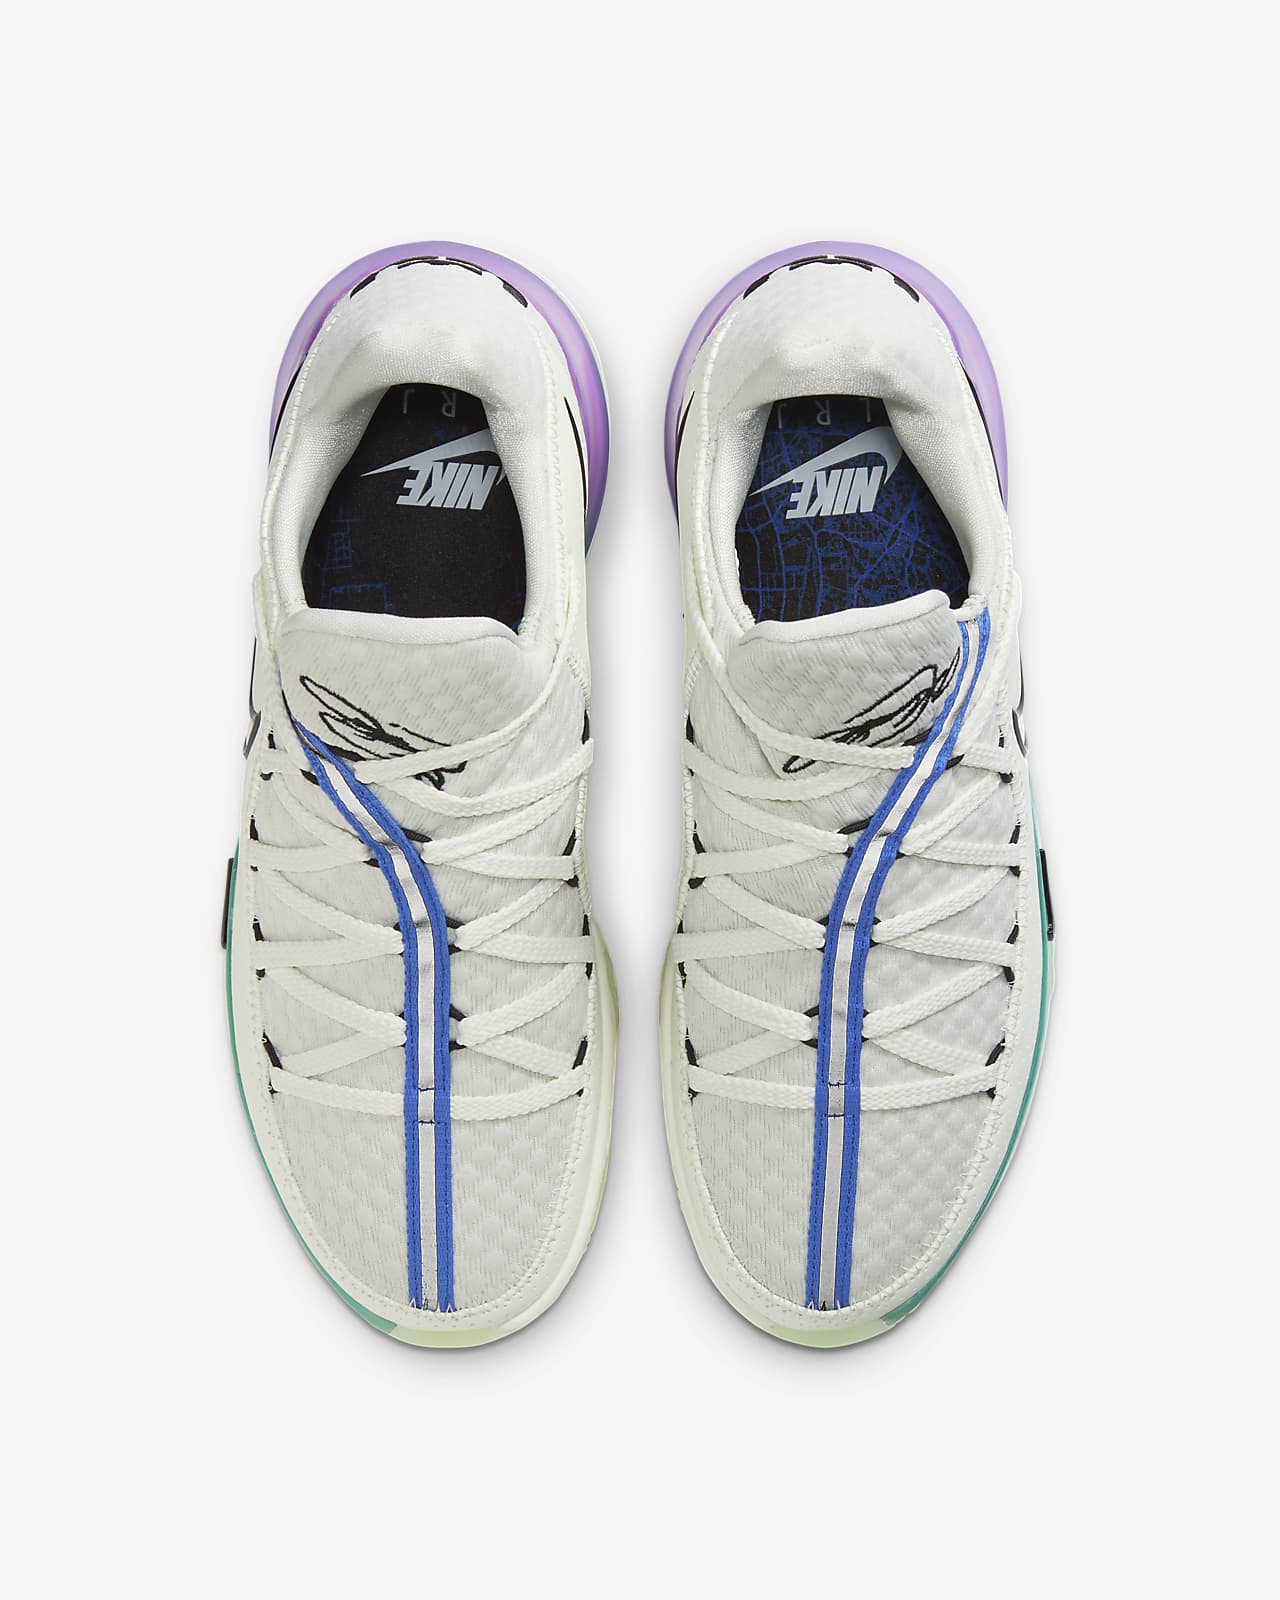 LeBron 17 Low Basketball Shoe. Nike.com